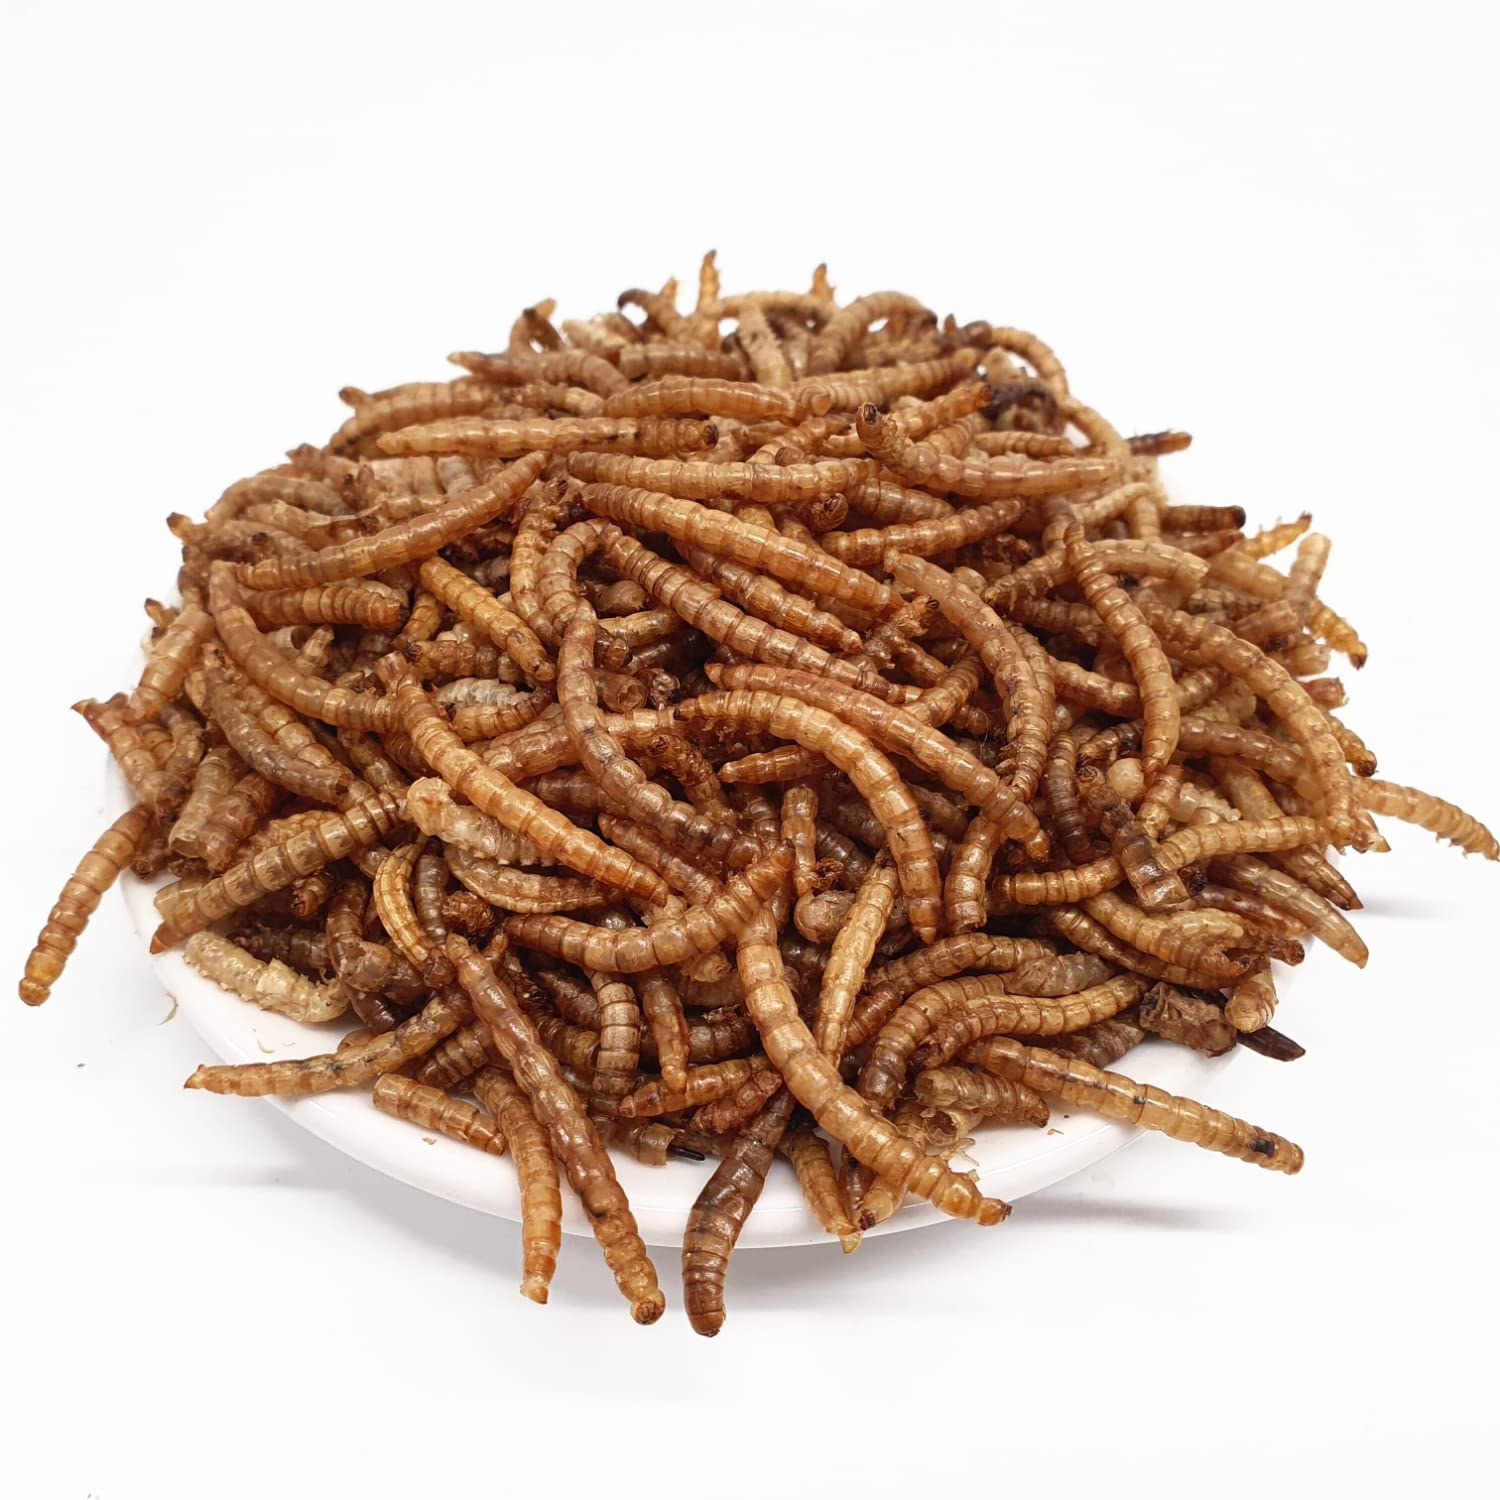 SUPRAVIT Mehlwürmer getrocknet 10kg (entspricht 65 Liter) getrocknete Mehlwürmer für Hühner, Wildvögel, Igel, Nager & Reptilien als Vogelfutter & Igelfutter